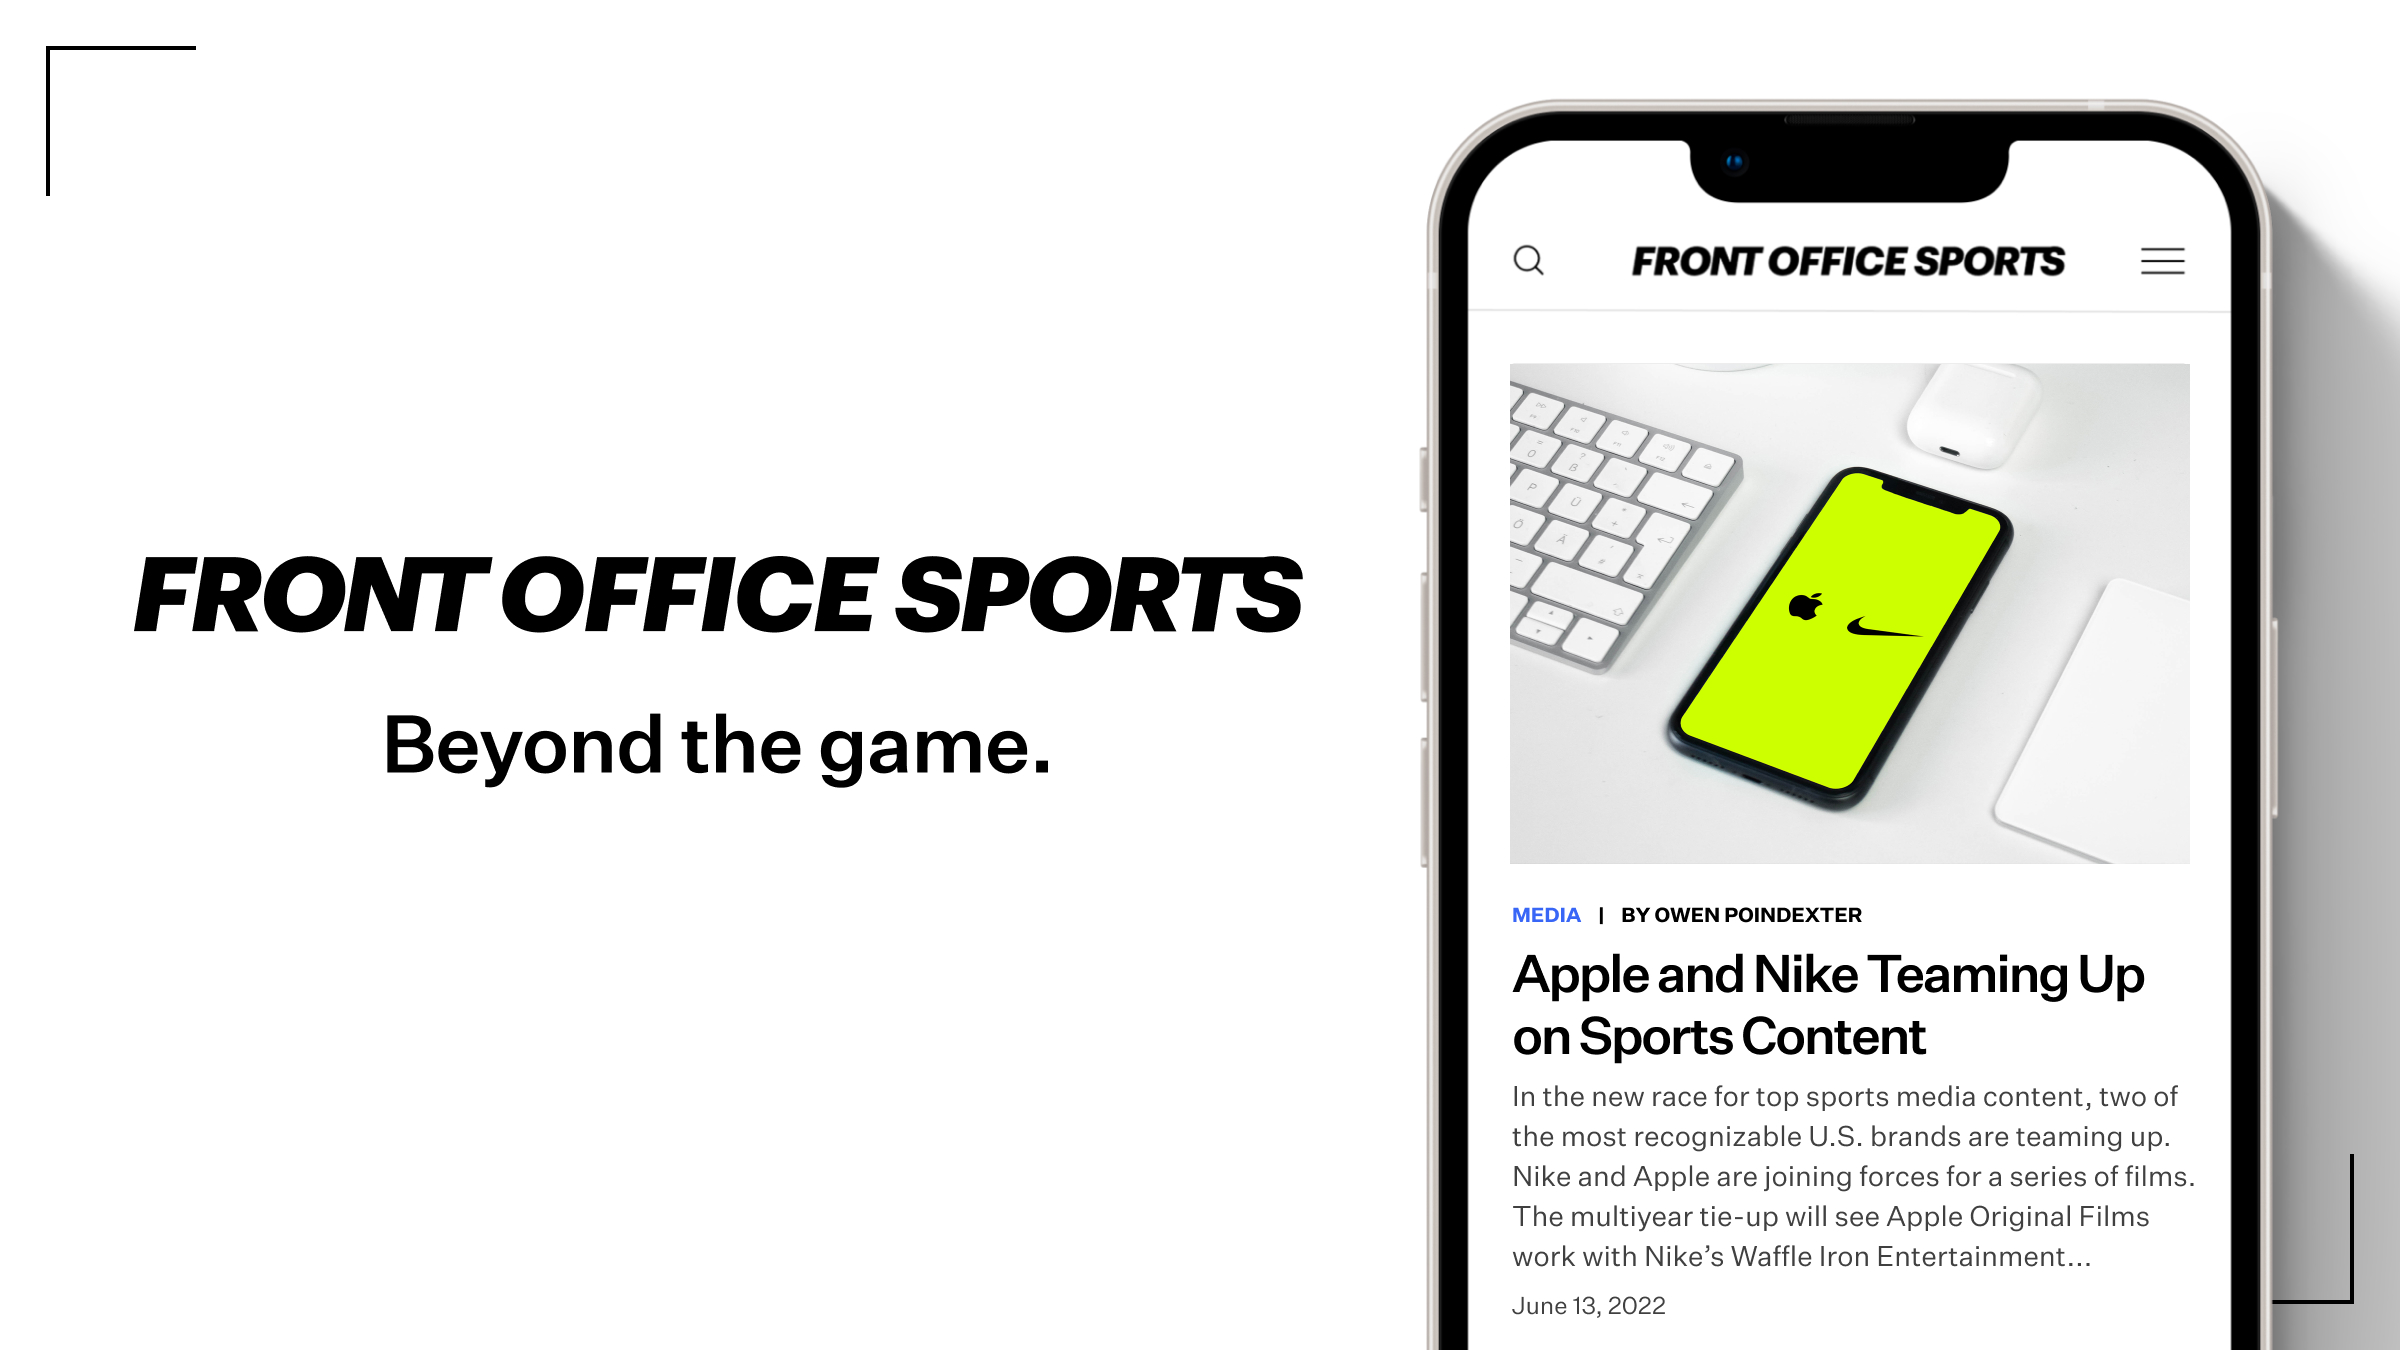 Thể thao văn phòng: Để giảm stress sau những giờ làm việc căng thẳng, thể thao văn phòng là một lựa chọn tuyệt vời. Hãy xem hình ảnh để tìm hiểu thêm về các bài tập cơ bản cho văn phòng và cách nâng cao sức khỏe một cách vui vẻ và dễ dàng.